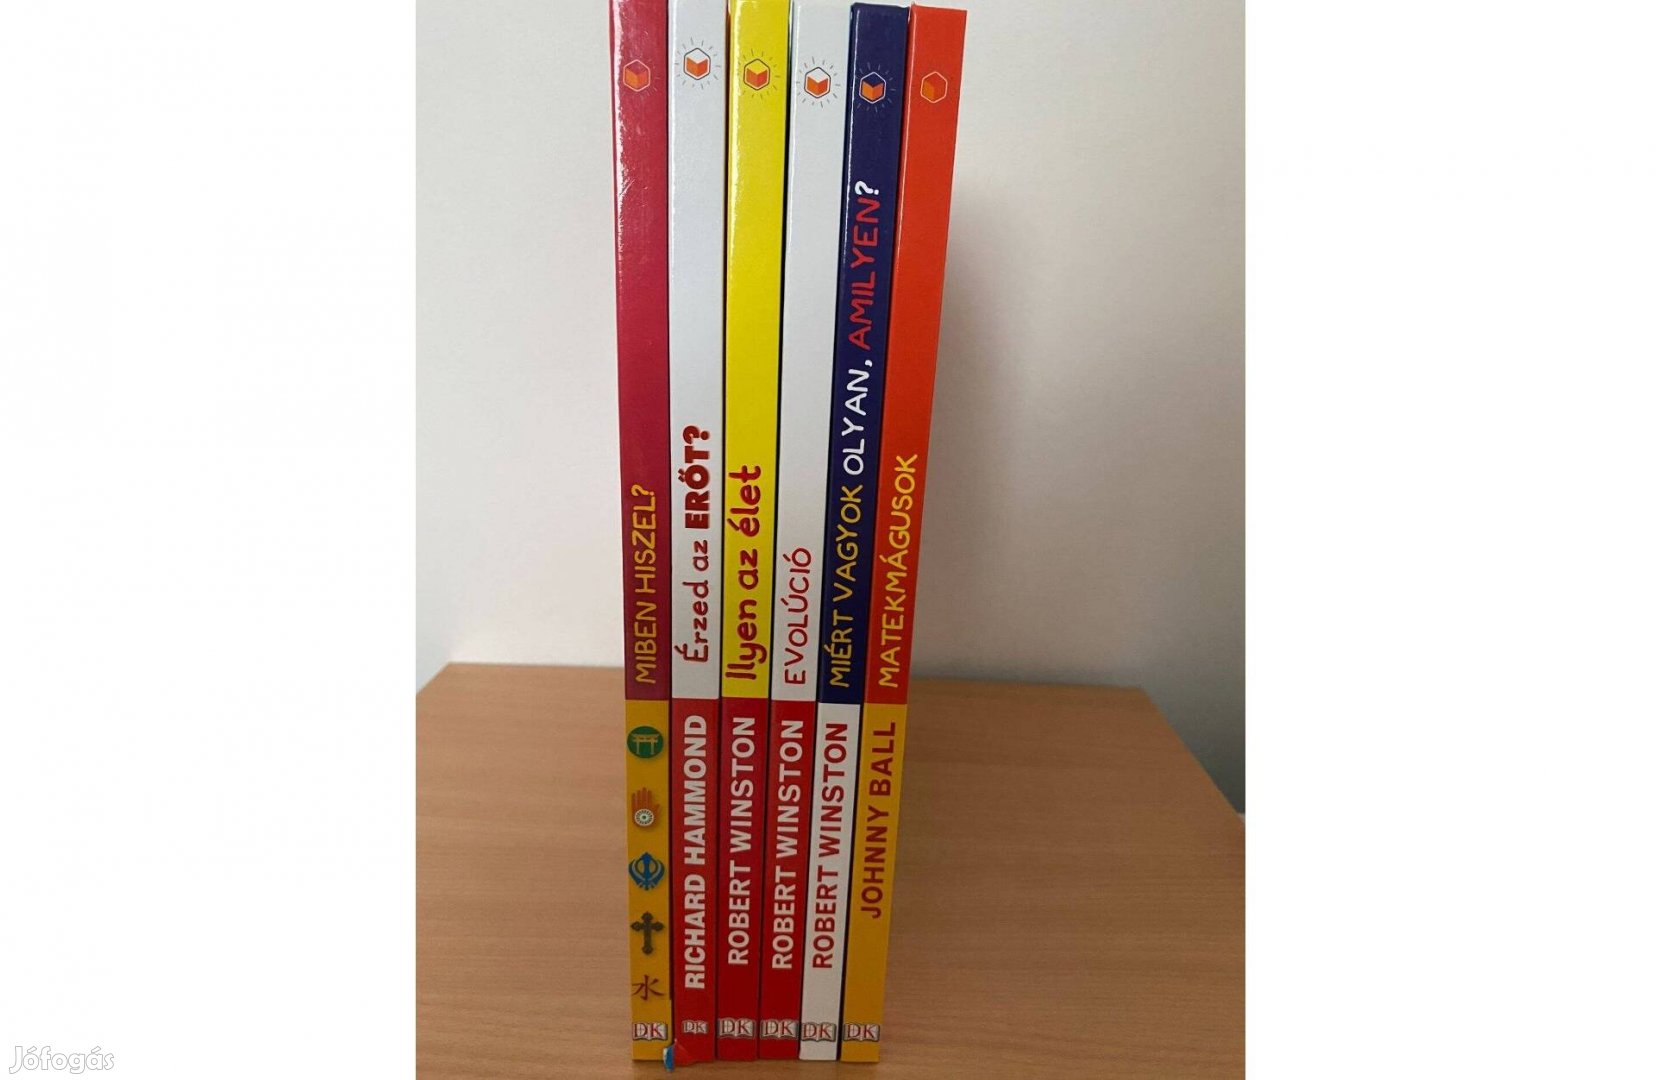 HVG Okoskönyvek sorozat első hat kötete